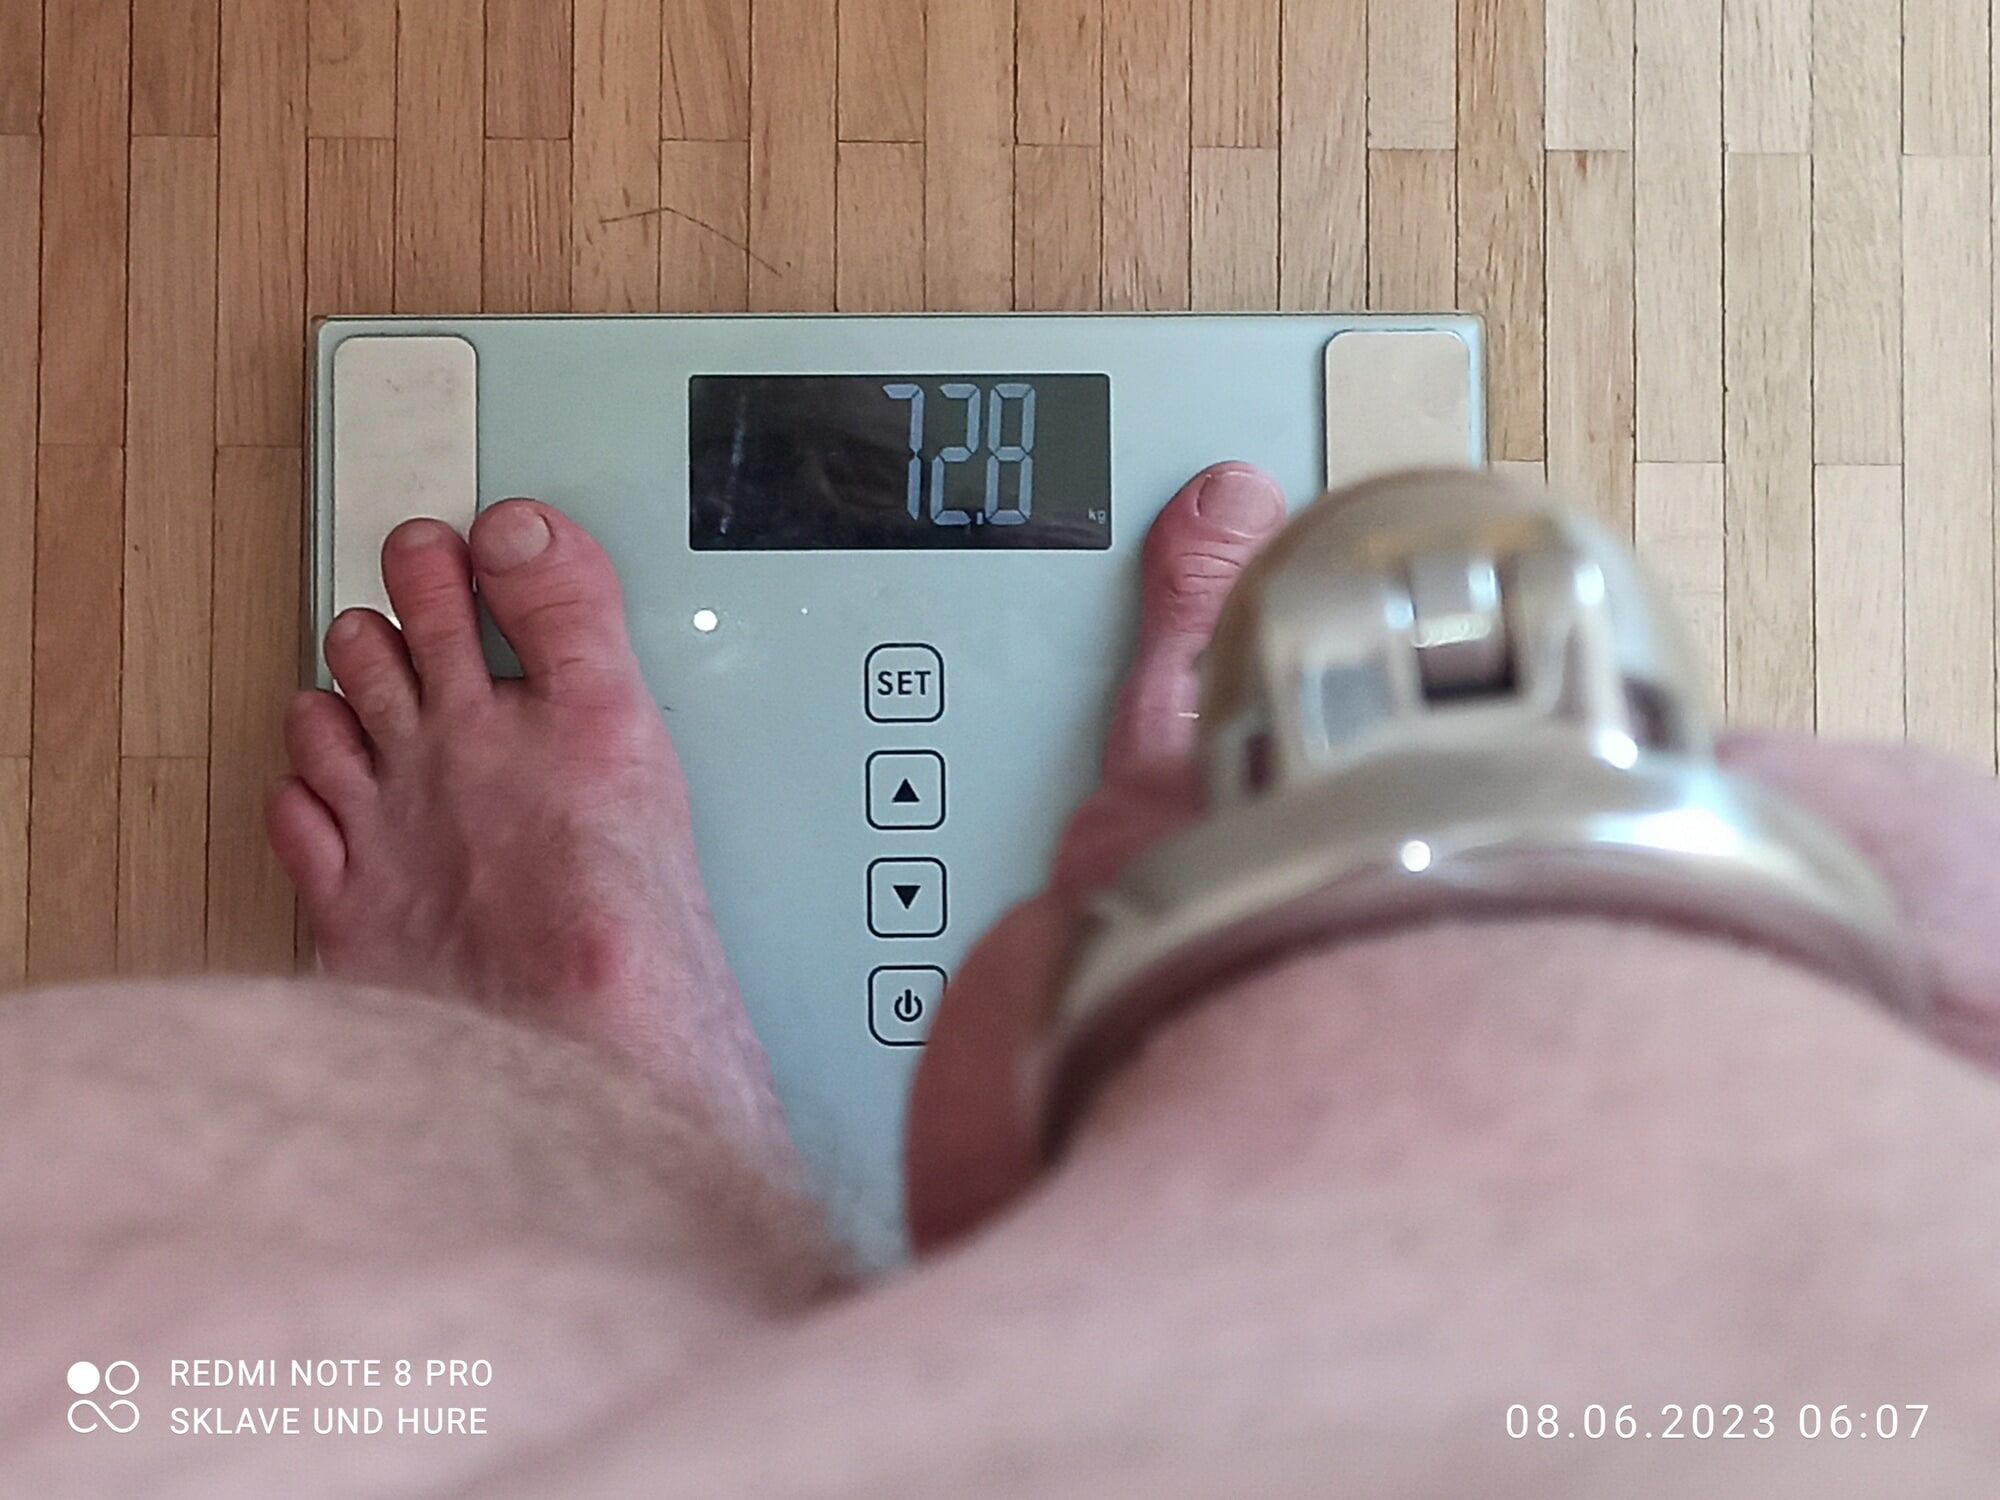 weighing , cagecheck, 08.06.2023